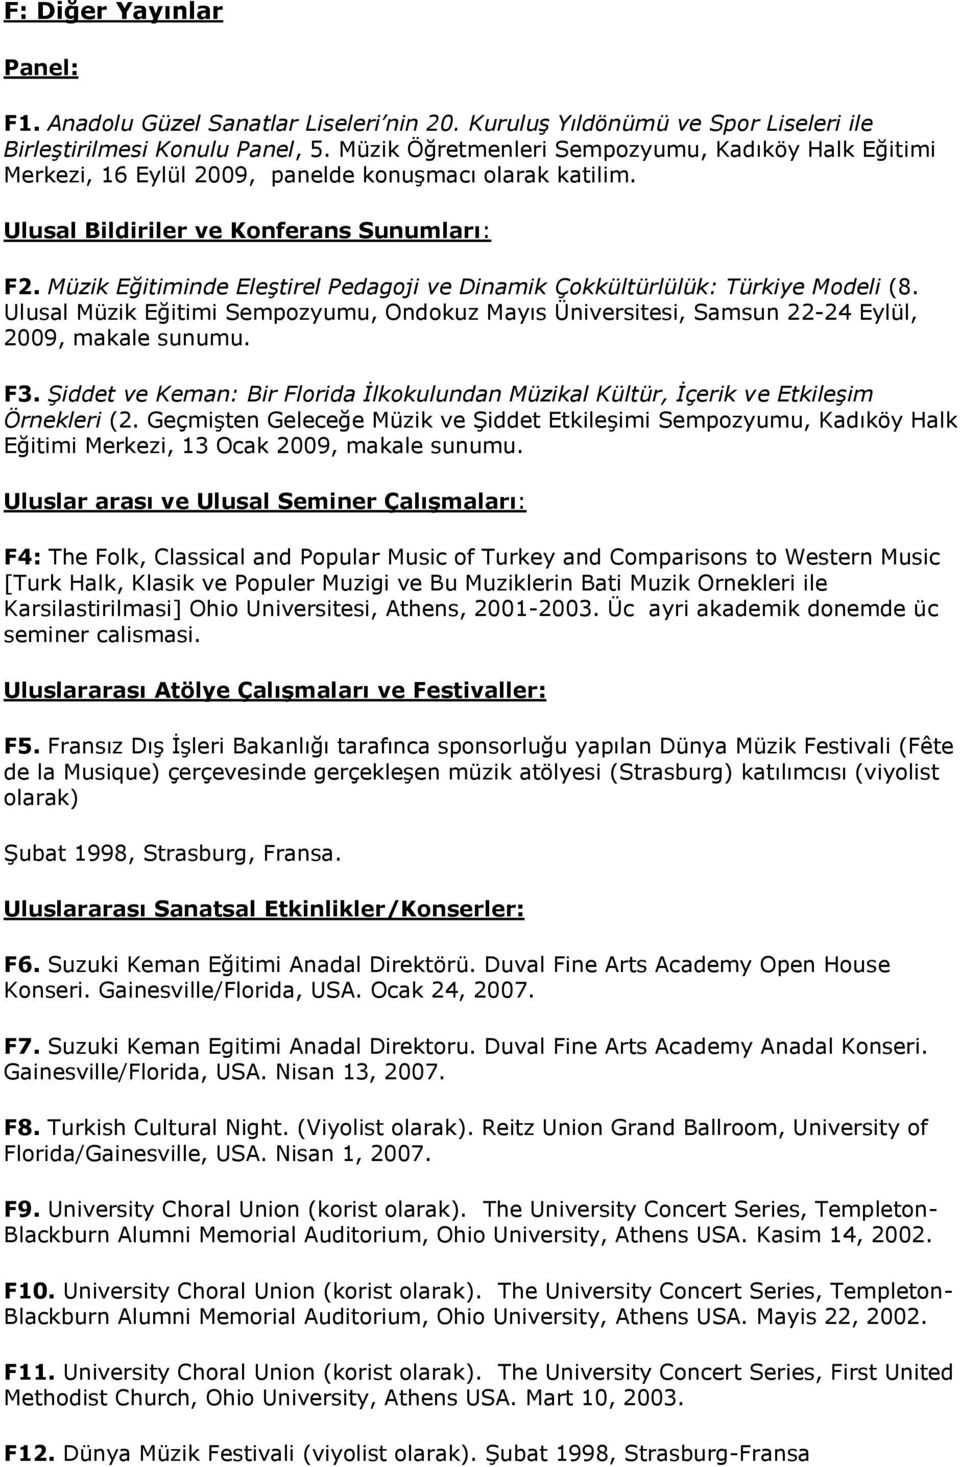 Müzik Eğitiminde Eleştirel Pedagoji ve Dinamik Çokkültürlülük: Türkiye Modeli (8. Ulusal Müzik Eğitimi Sempozyumu, Ondokuz Mayıs Üniversitesi, Samsun 22-24 Eylül, 2009, makale sunumu. F3.